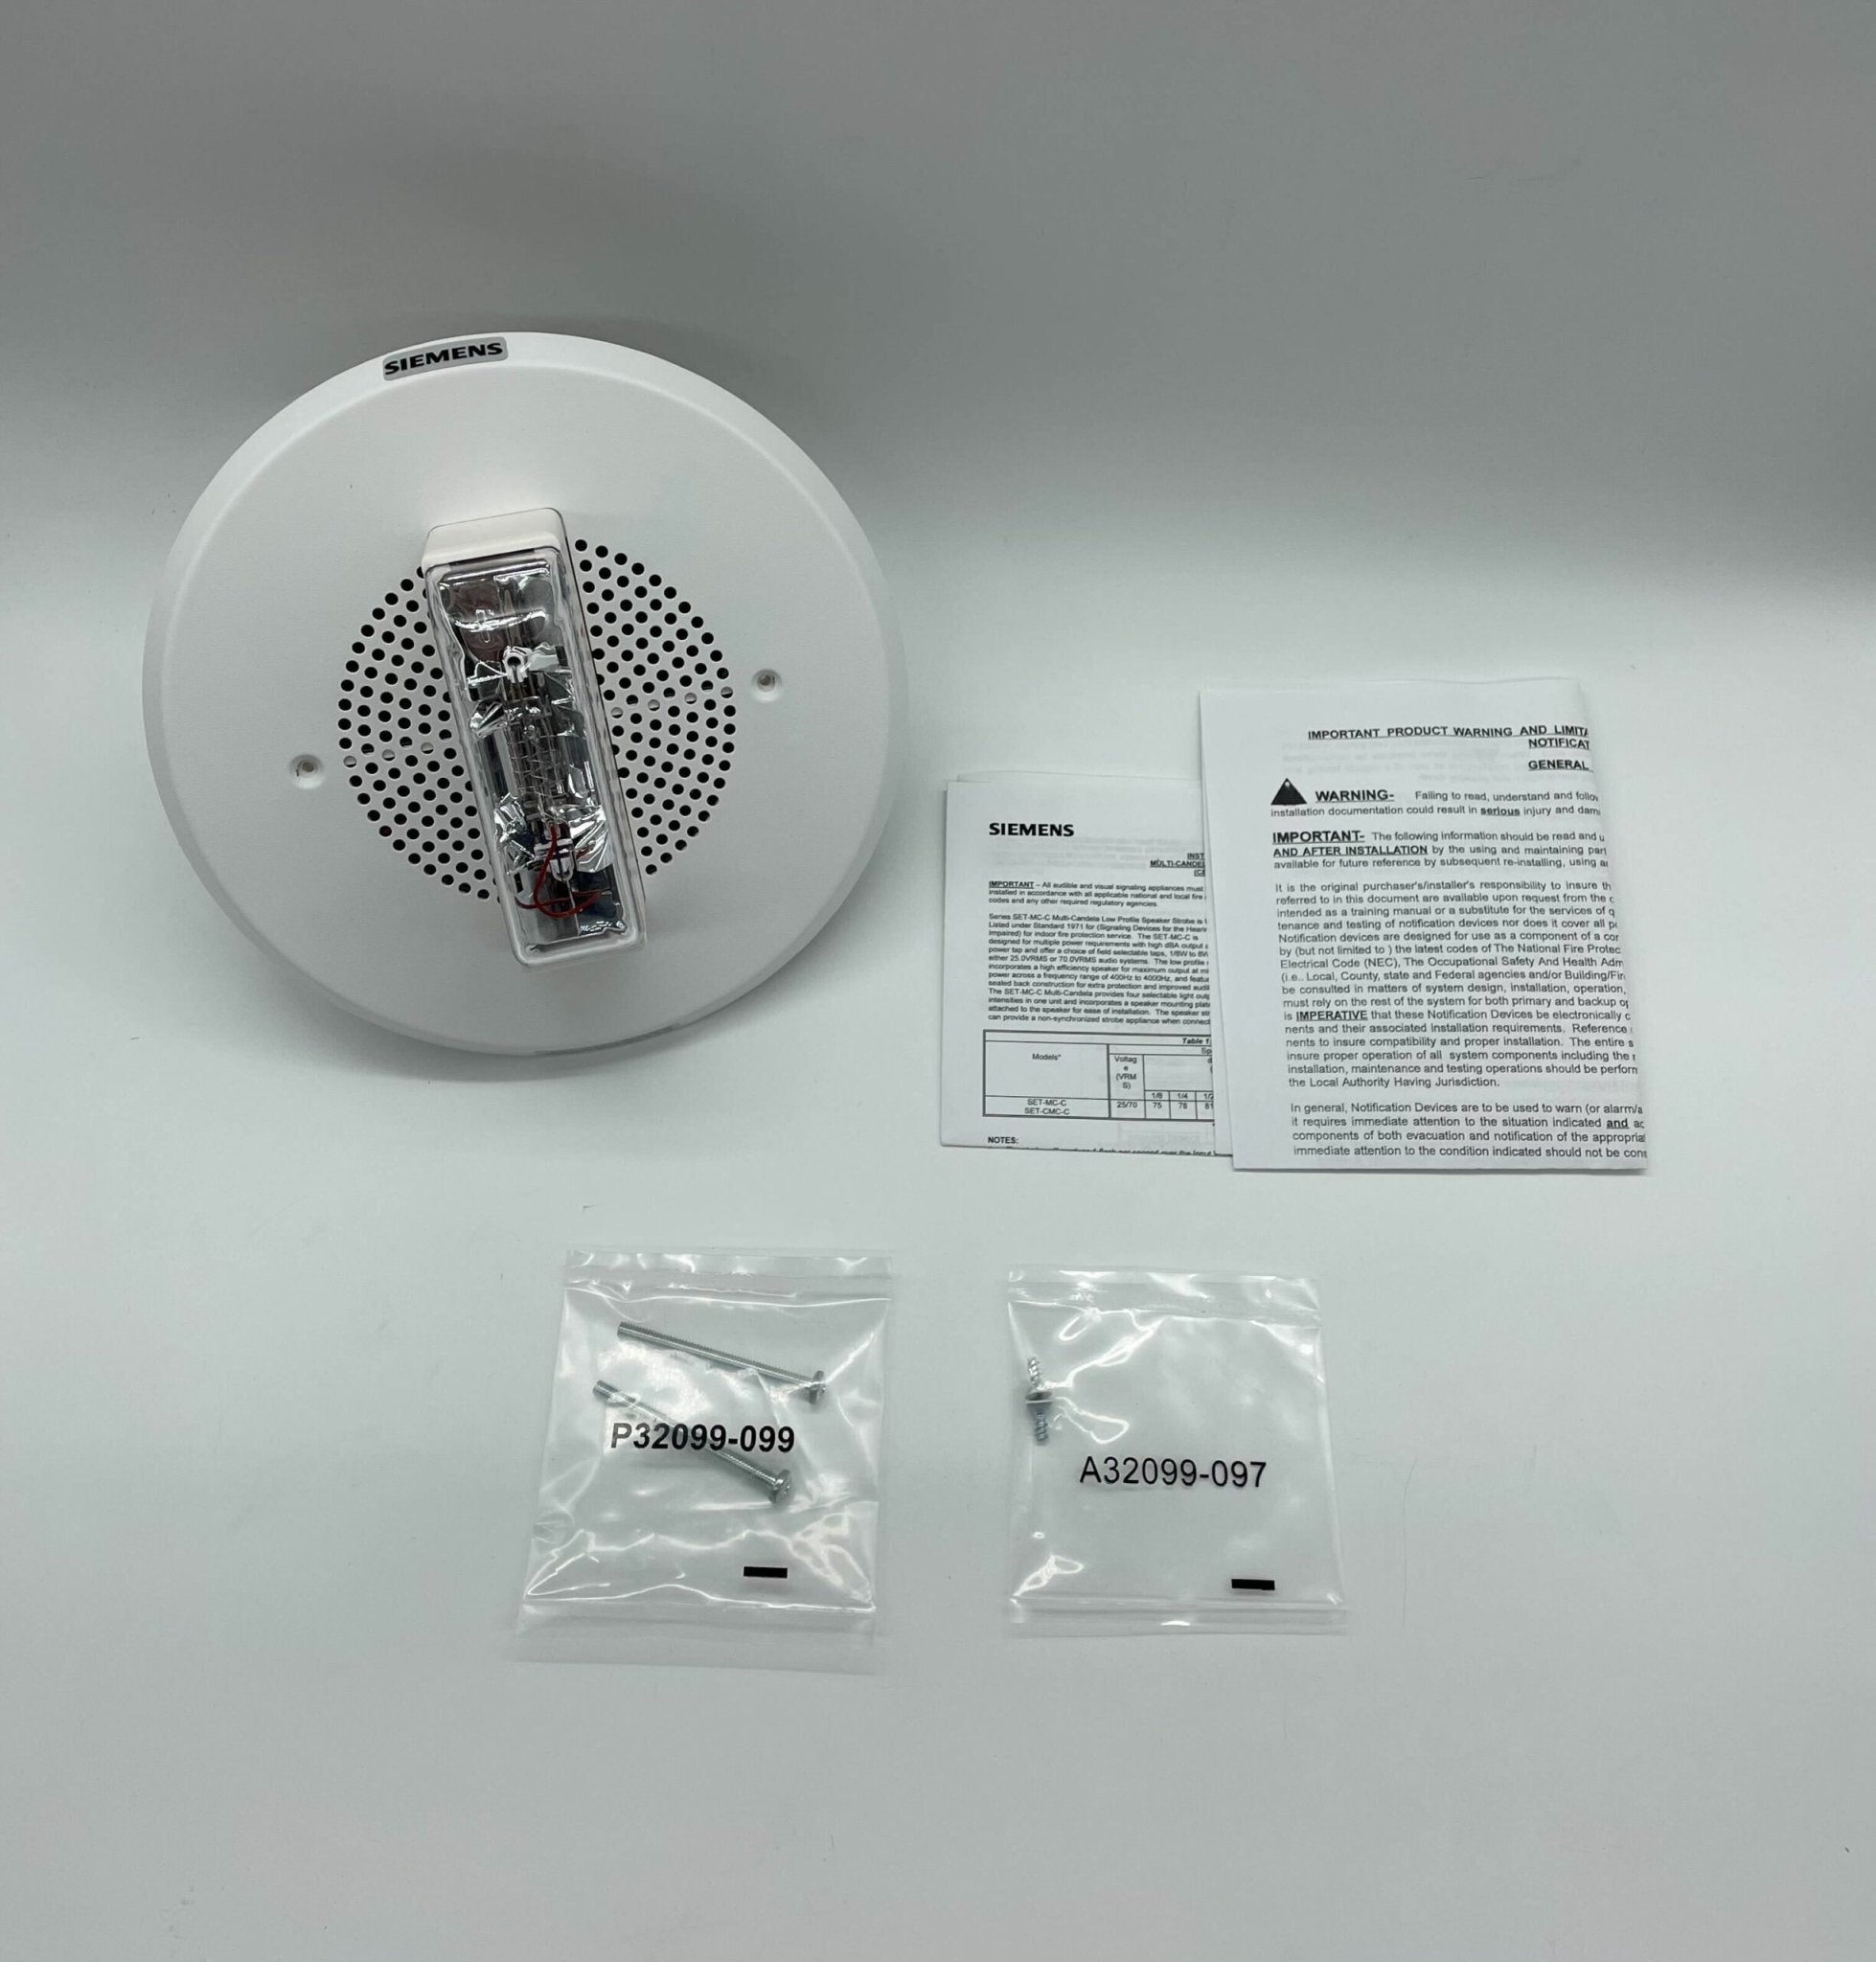 Siemens SET-MC-CW Speaker Strobe For Ceiling - The Fire Alarm Supplier